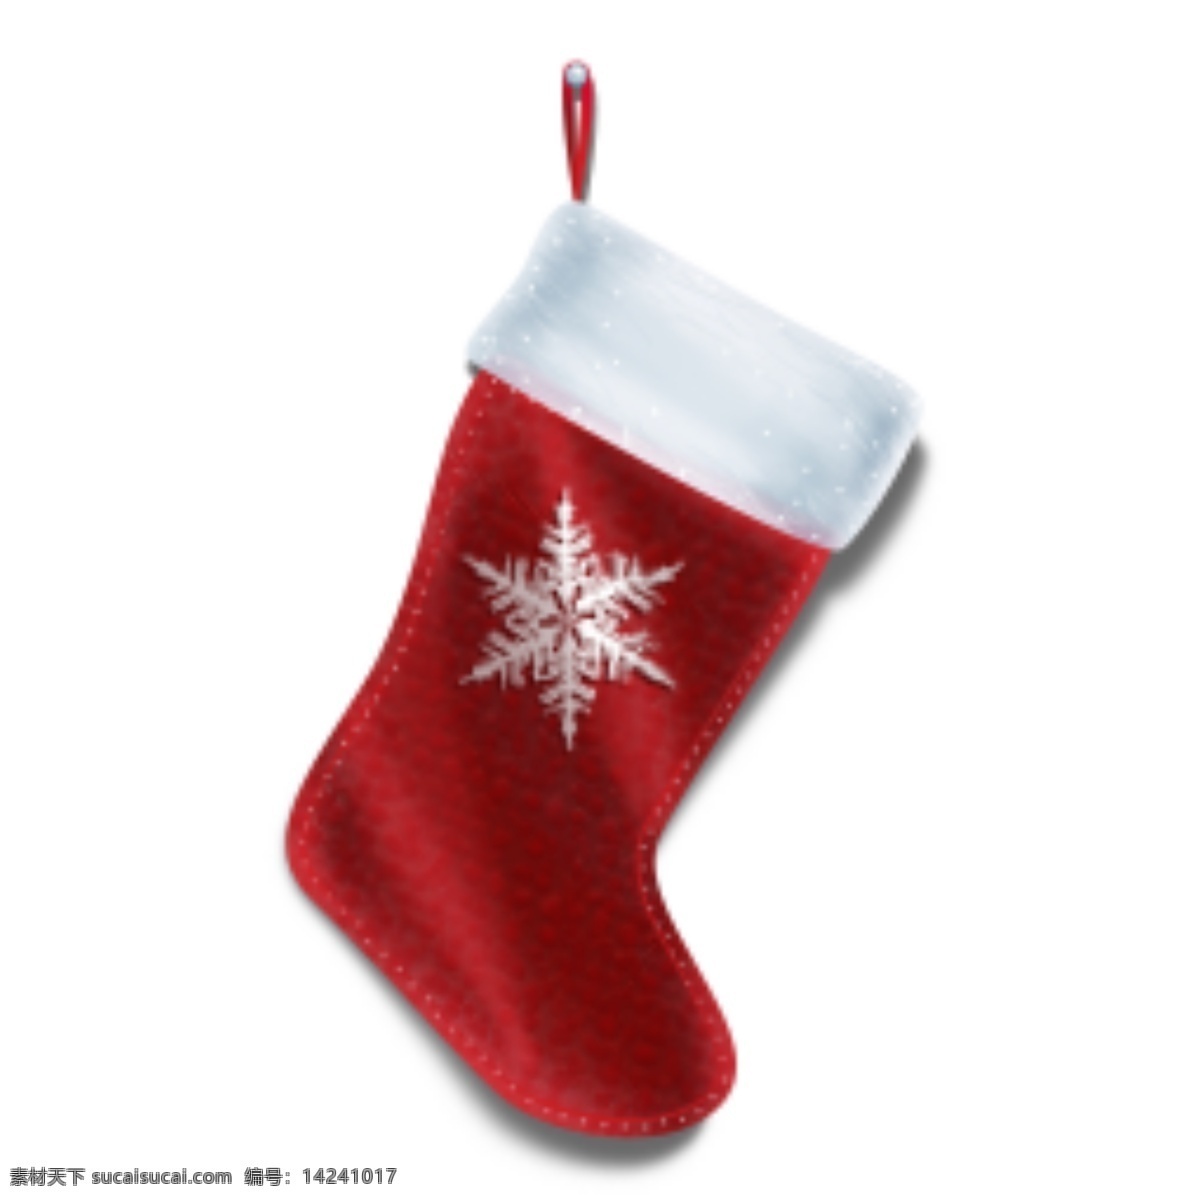 装 礼物 圣诞 袜 icon 图标 图标设计 icon设计 icon图标 网页图标 网页图标设计 网页 圣诞袜 圣诞袜图标